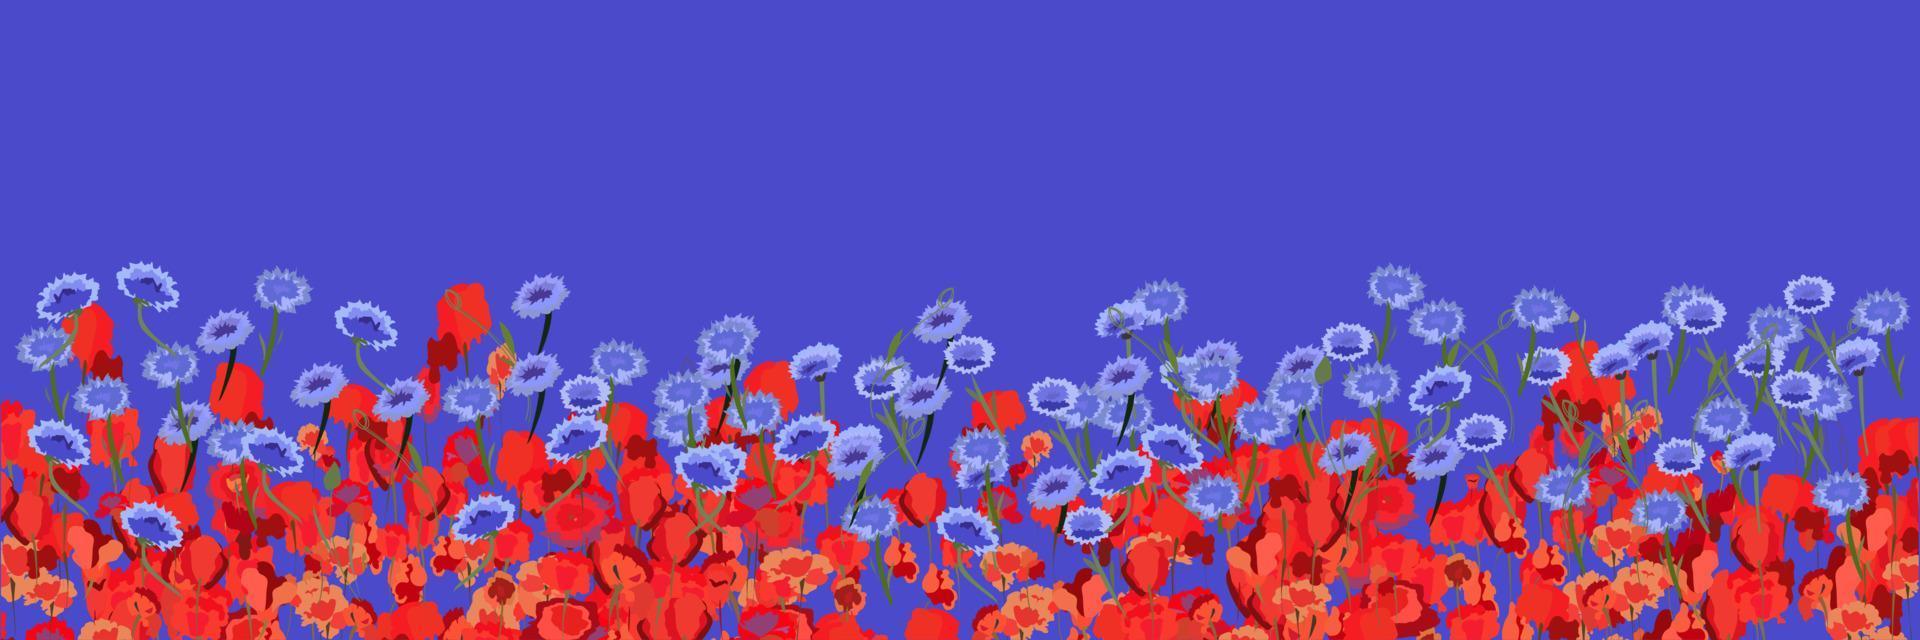 Imagen de fondo de flores sobre un fondo de amapolas y acianos vector